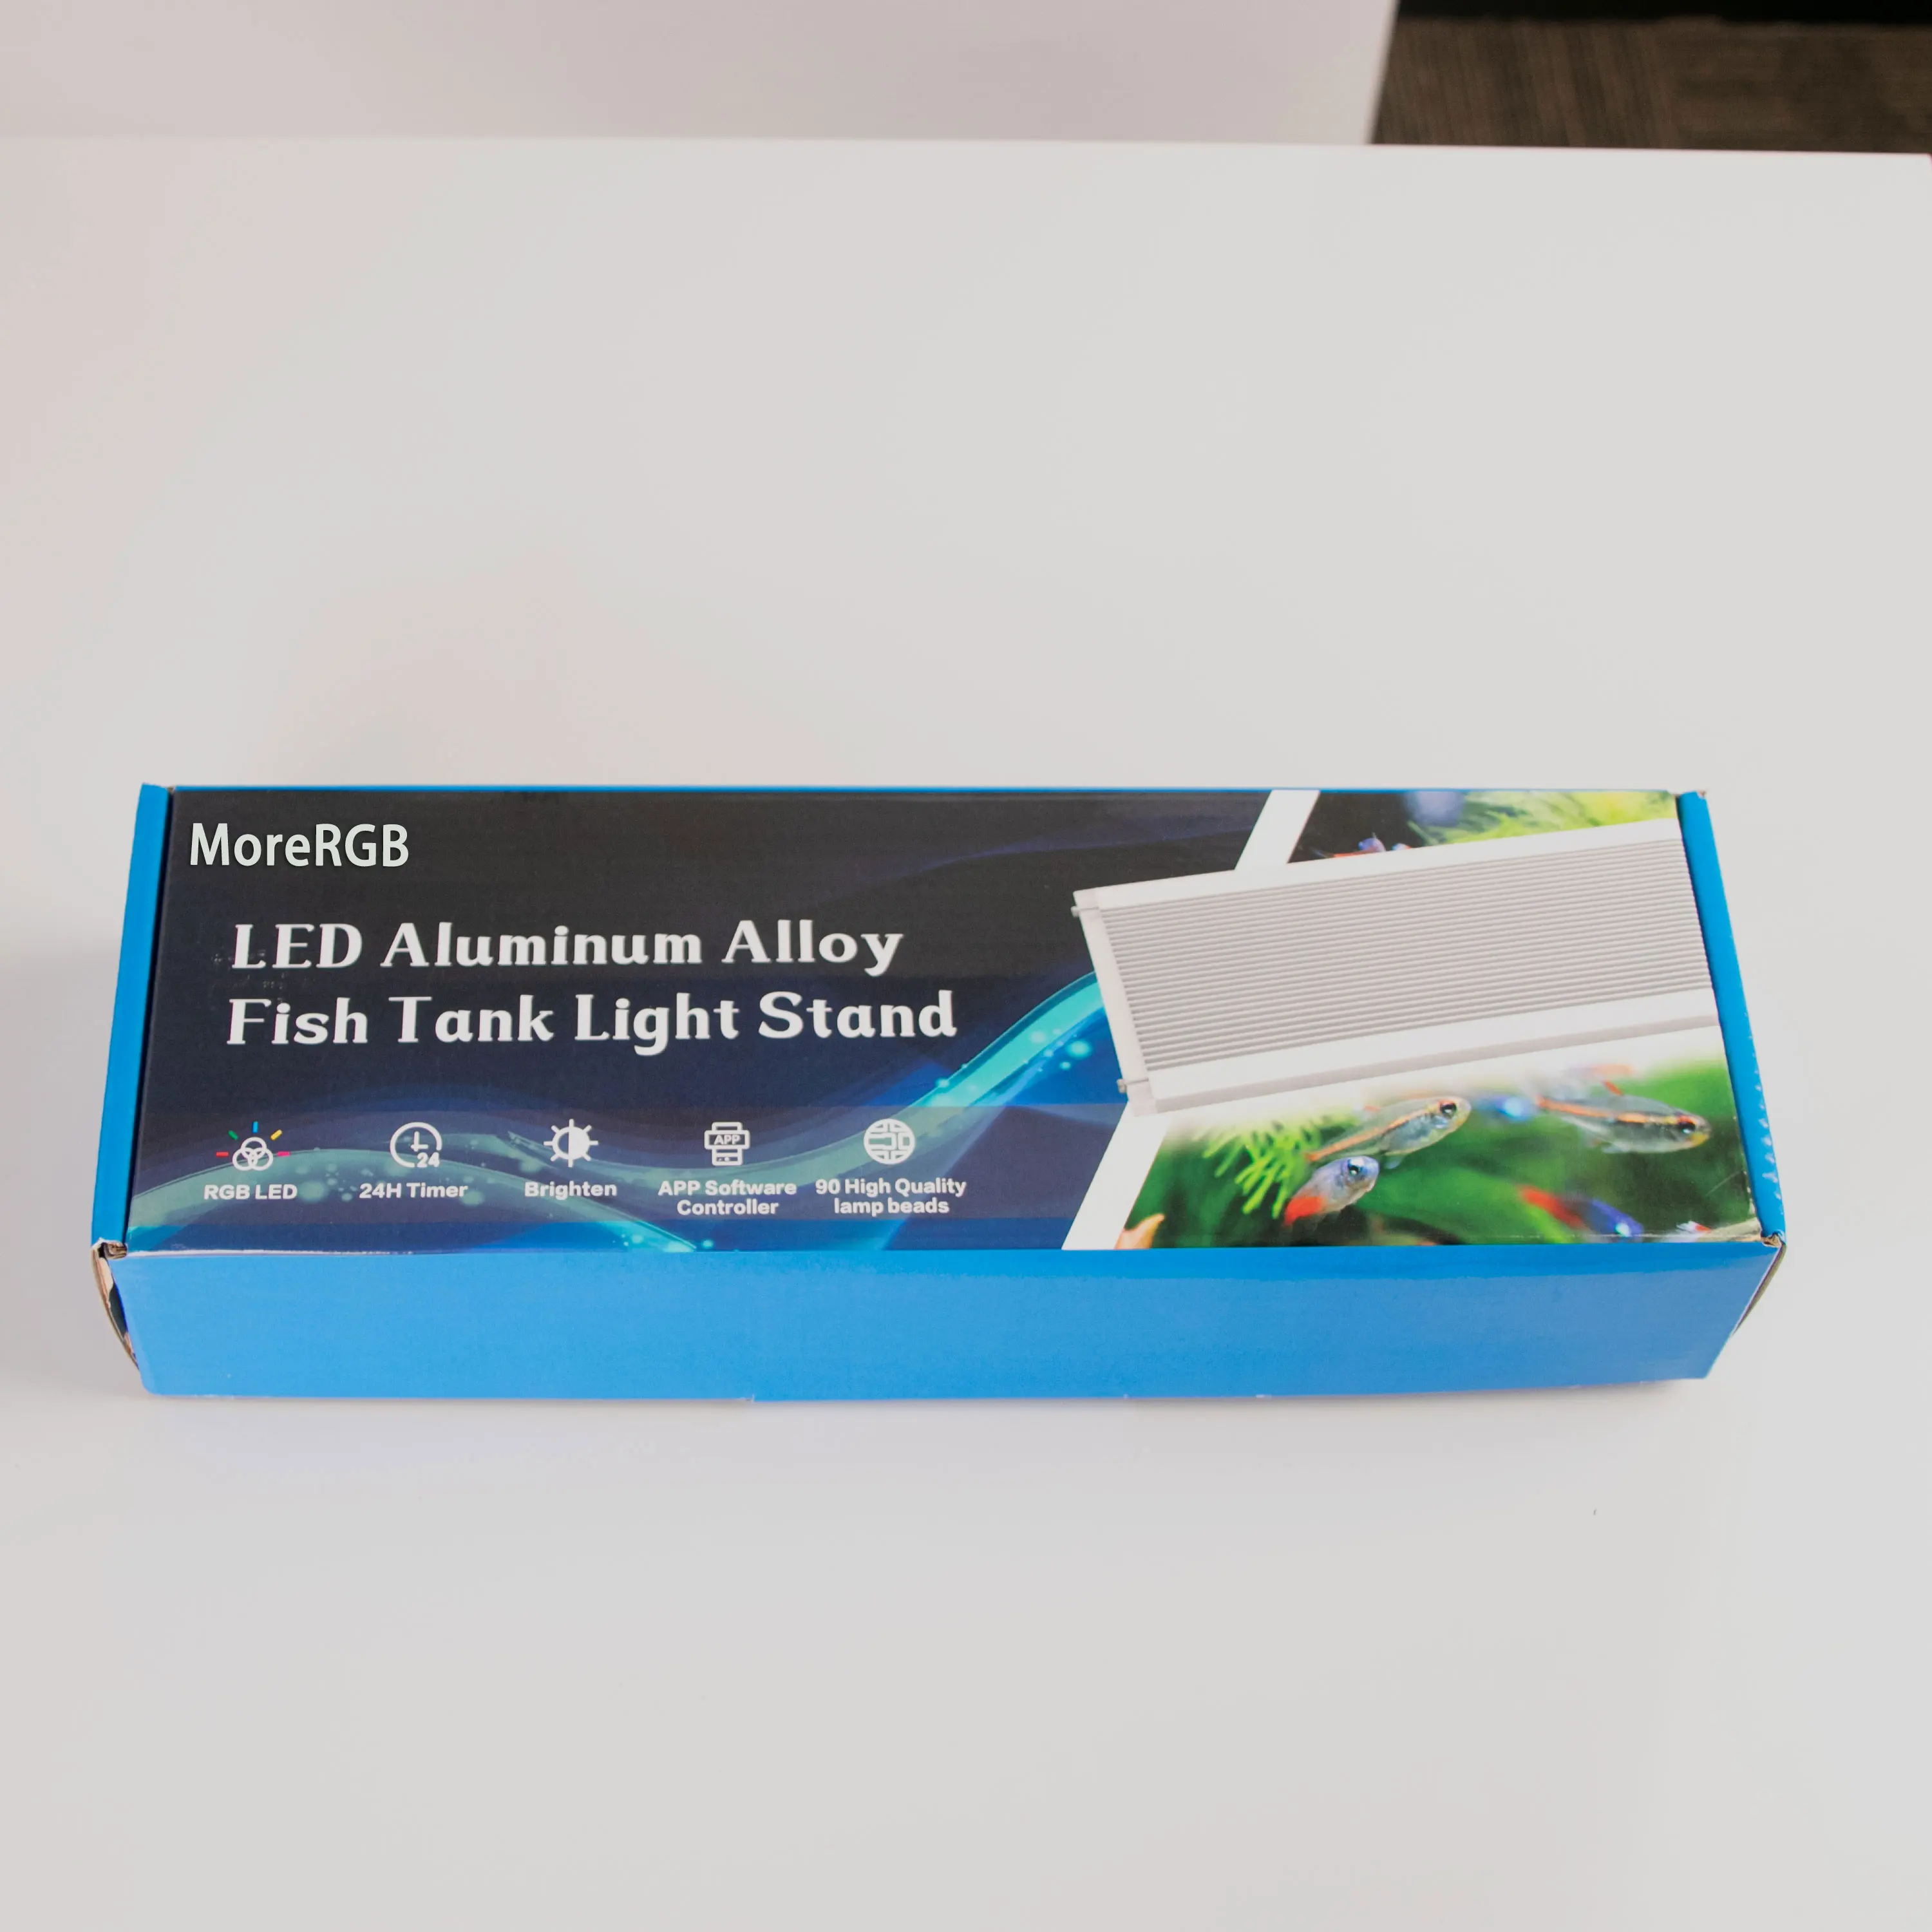 저렴한 MoreRGB 100CM 수족관 Led 조명 수족관 물고기 탱크 램프 타이머 기능 스탠드 수족관 램프 식물 꽃 해양